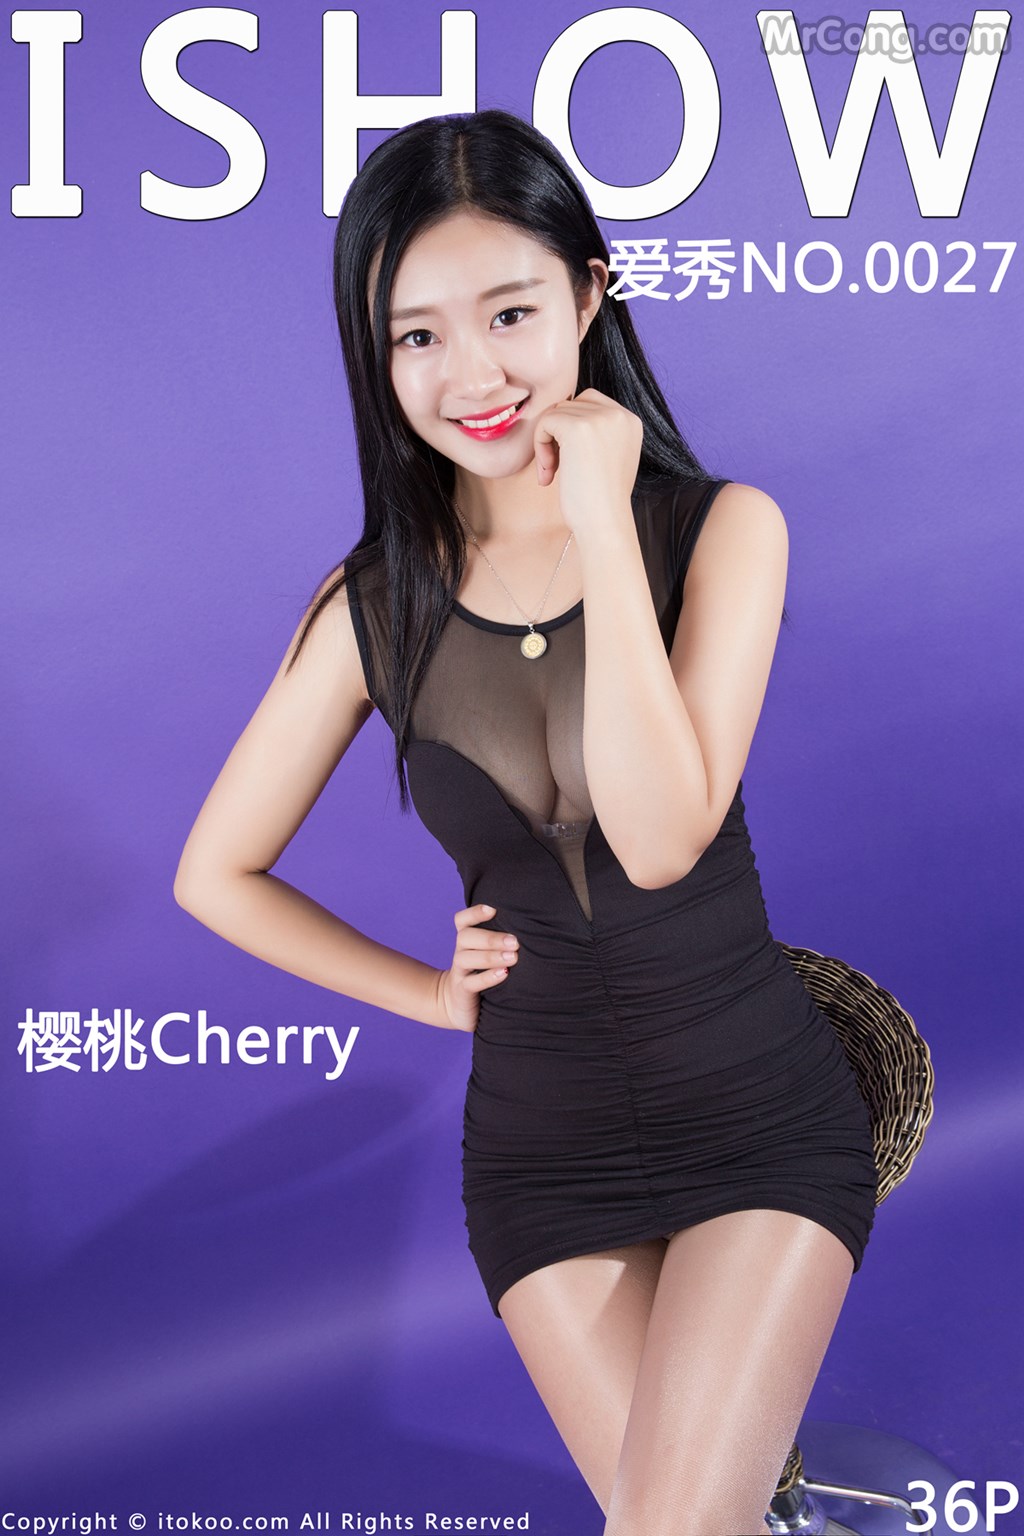 ISHOW No.027: Cherry Model (樱桃) (37 photos) photo 1-0